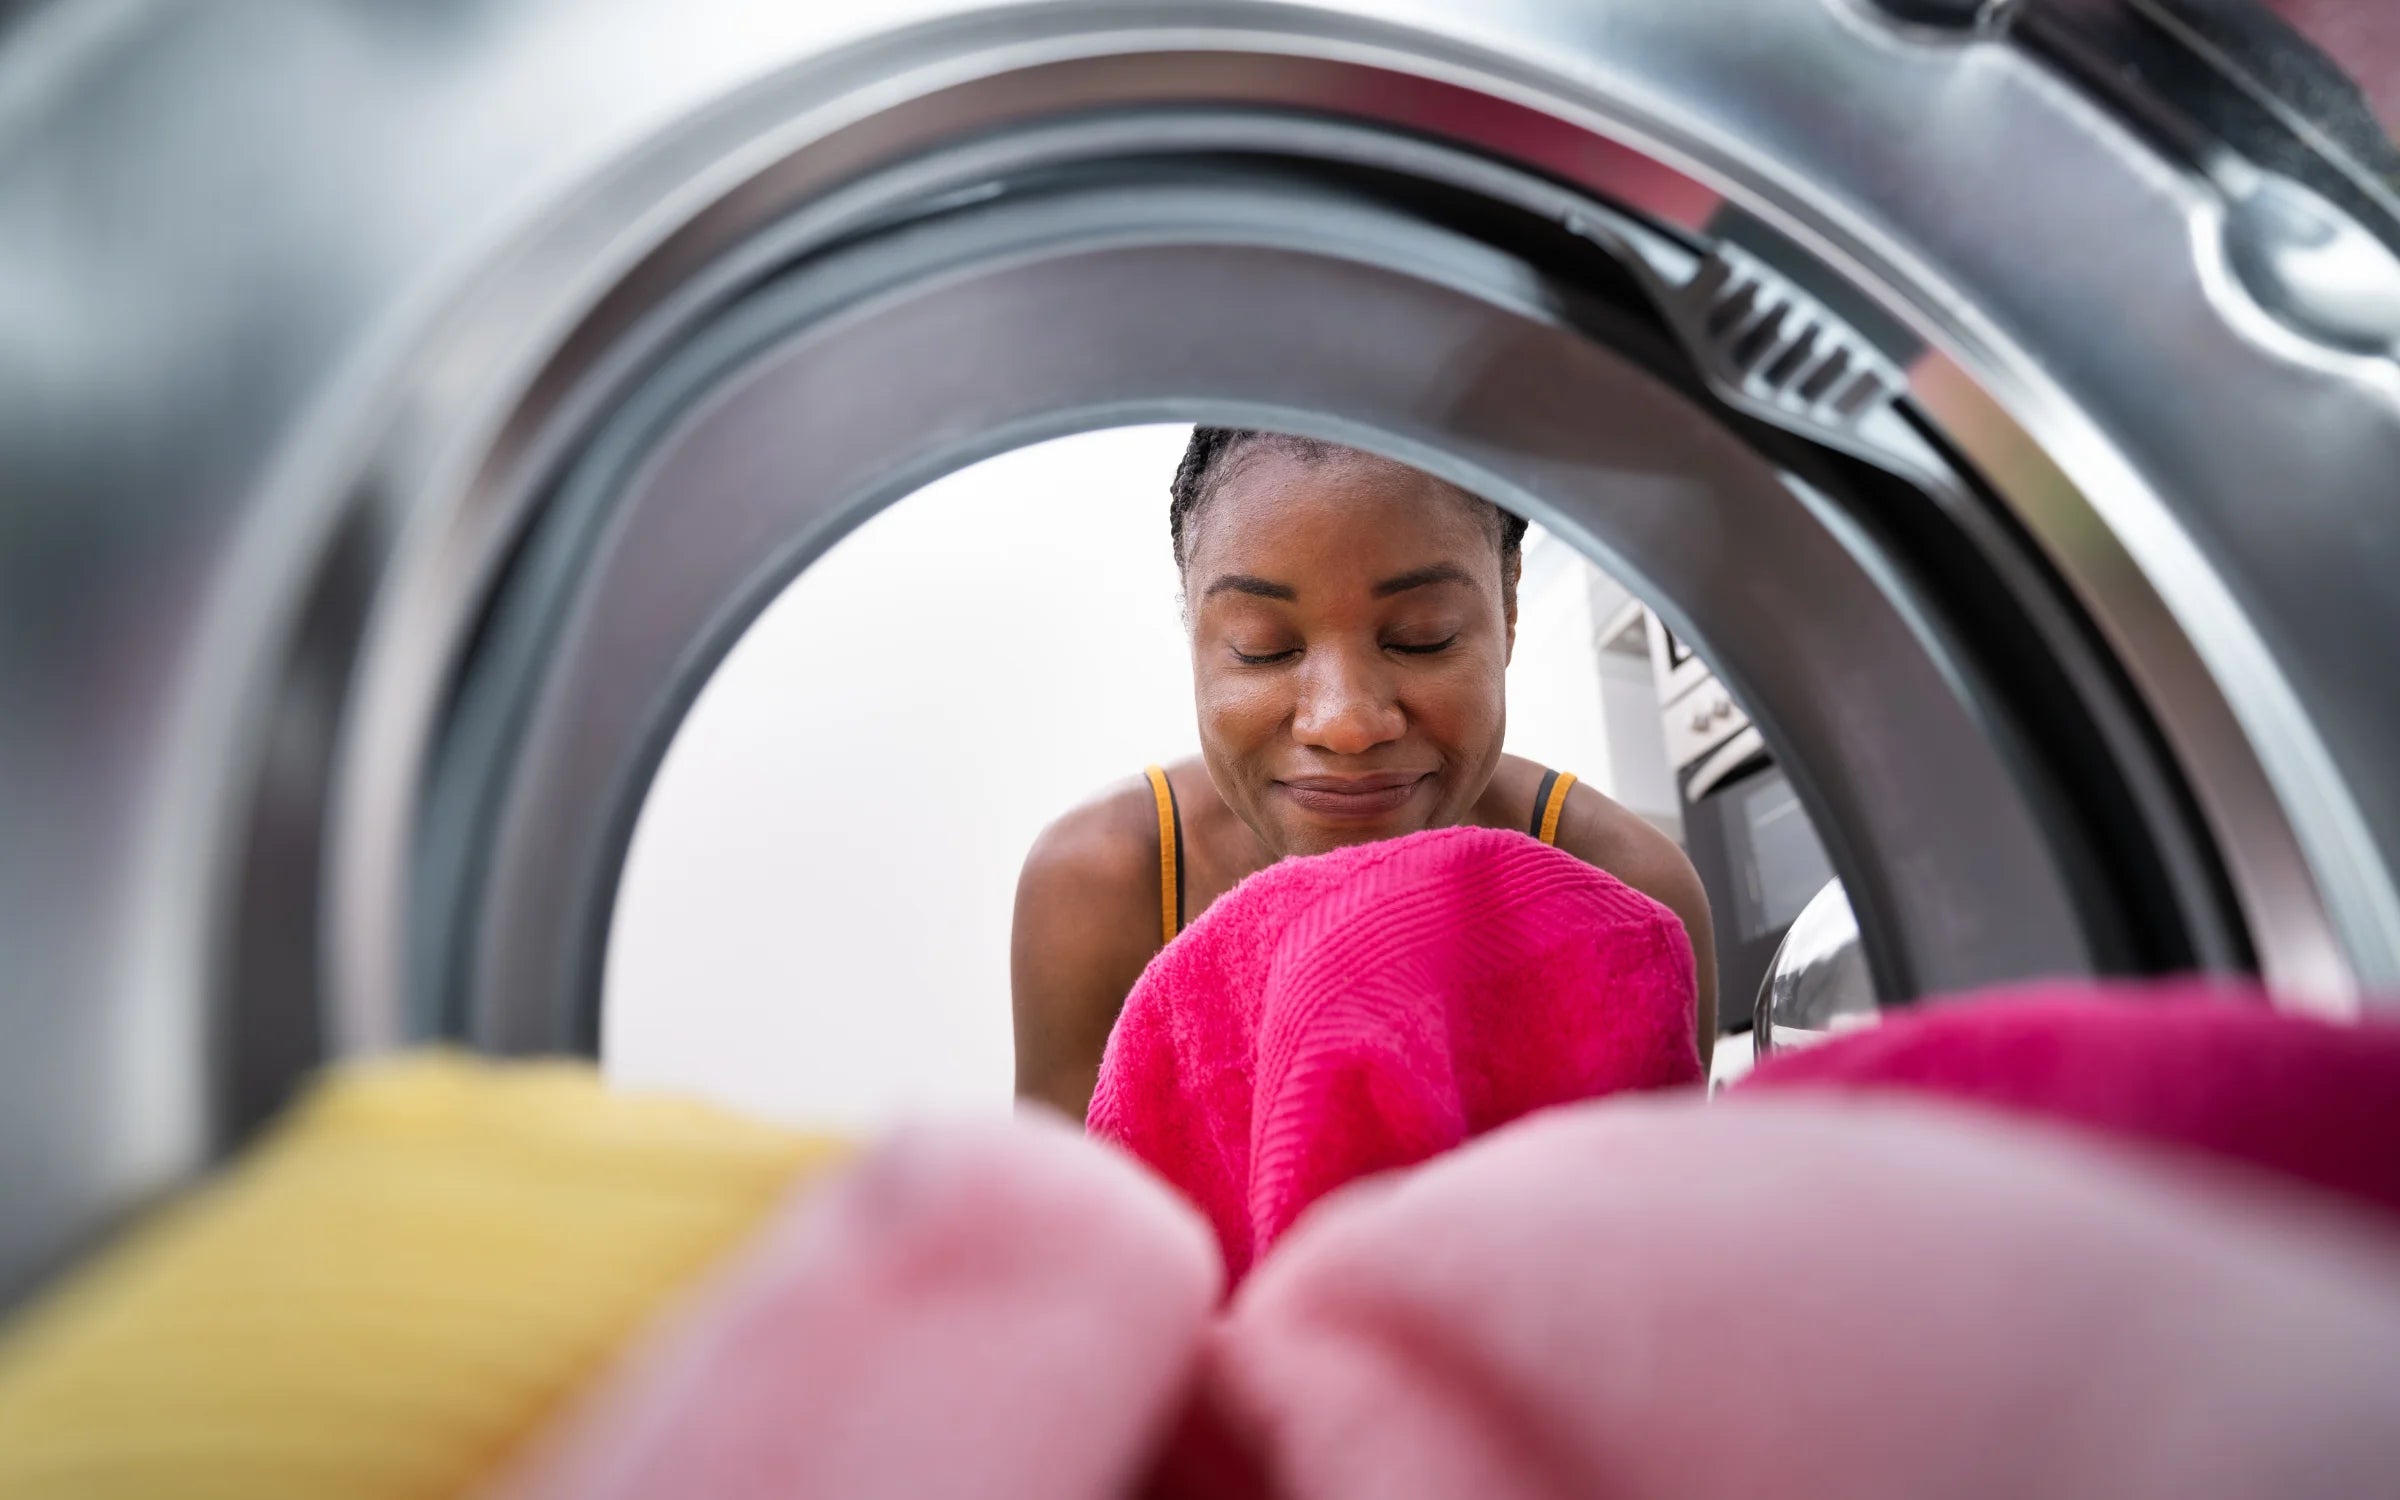 Fixer un sèche-linge sur une machine à laver : les méthodes